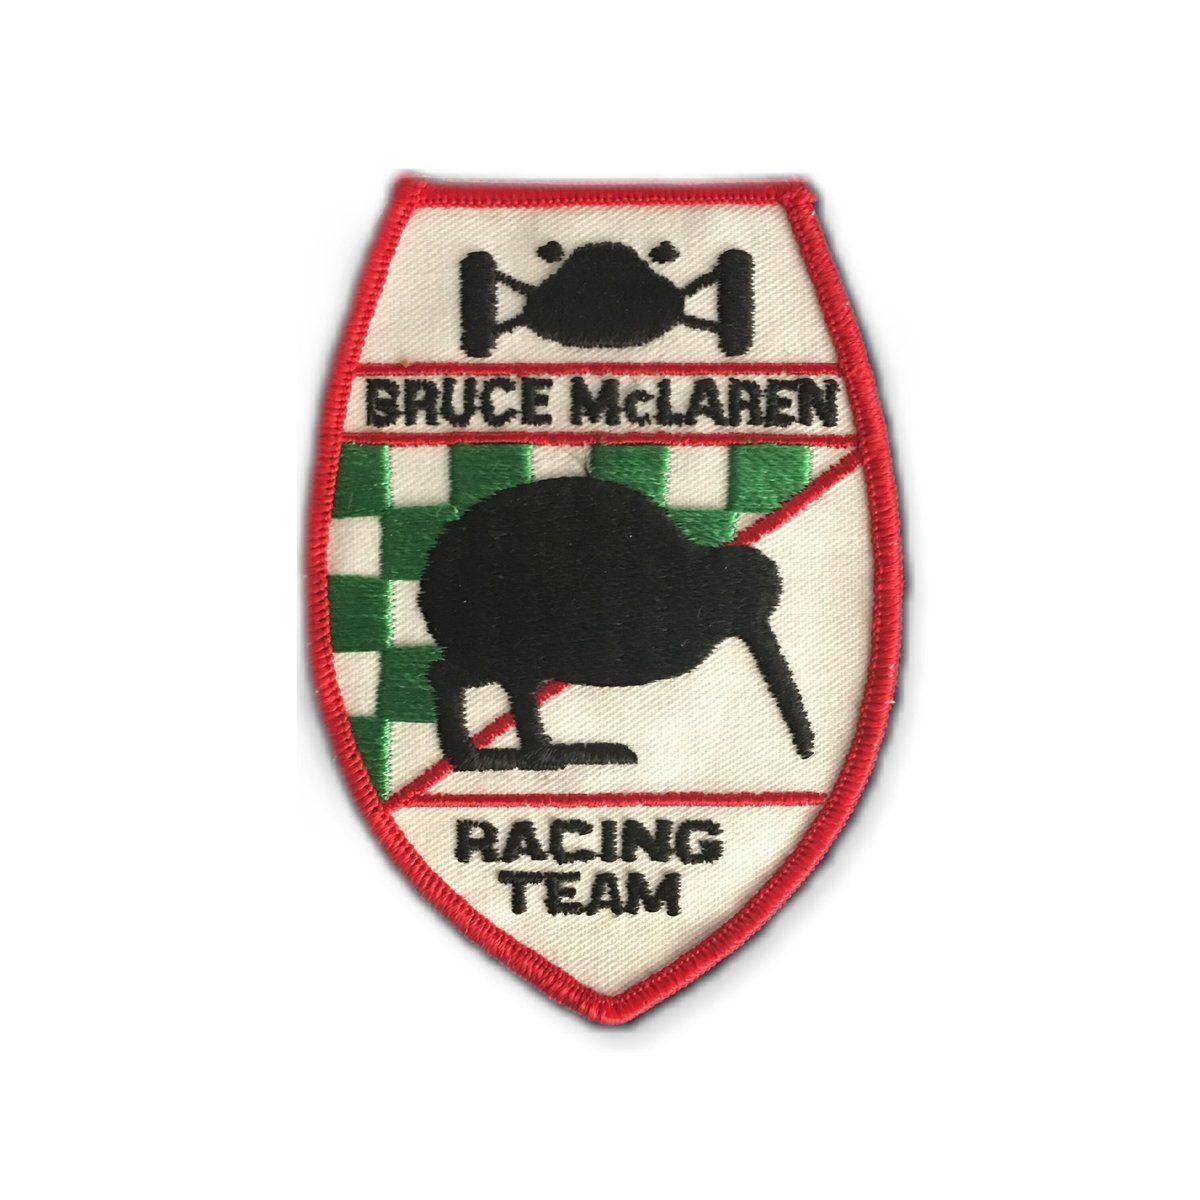 McLaren Racing Logo - Bruce McLaren Racing Team Vintage Jacket Patch – Megadeluxe